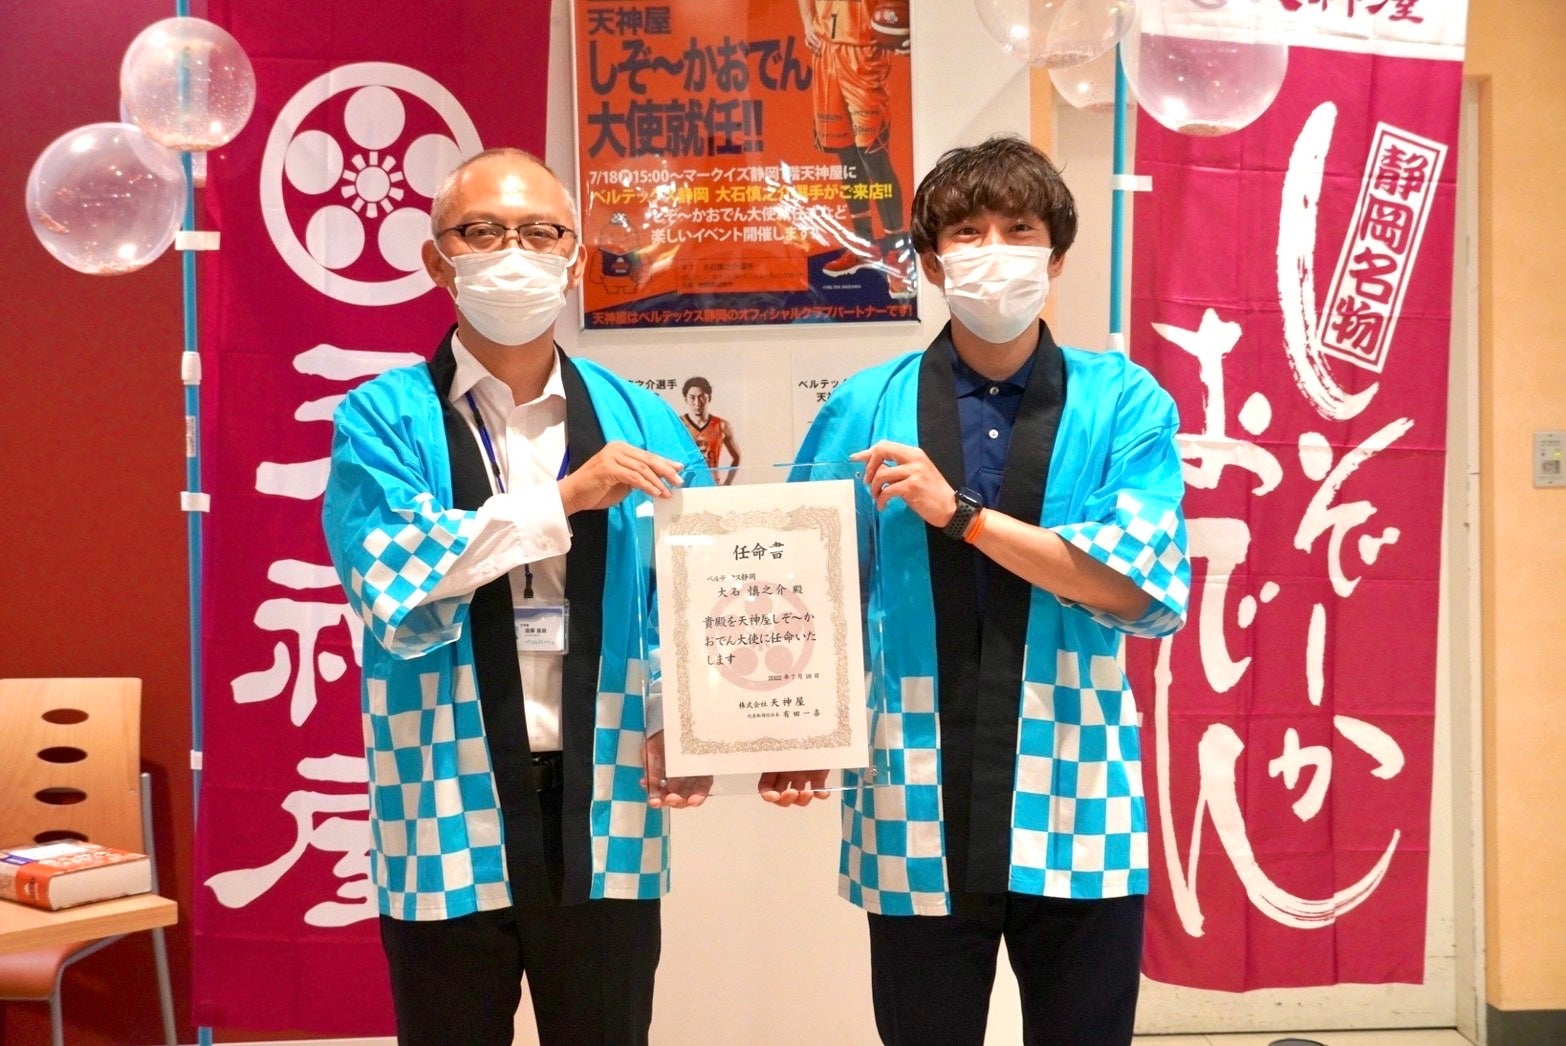 奈良の地に本格トルコレストランオープン　
「奈良県起業家支援事業」事業採択者が実現
今年度事業募集締め切り間近！7月29日郵送必着